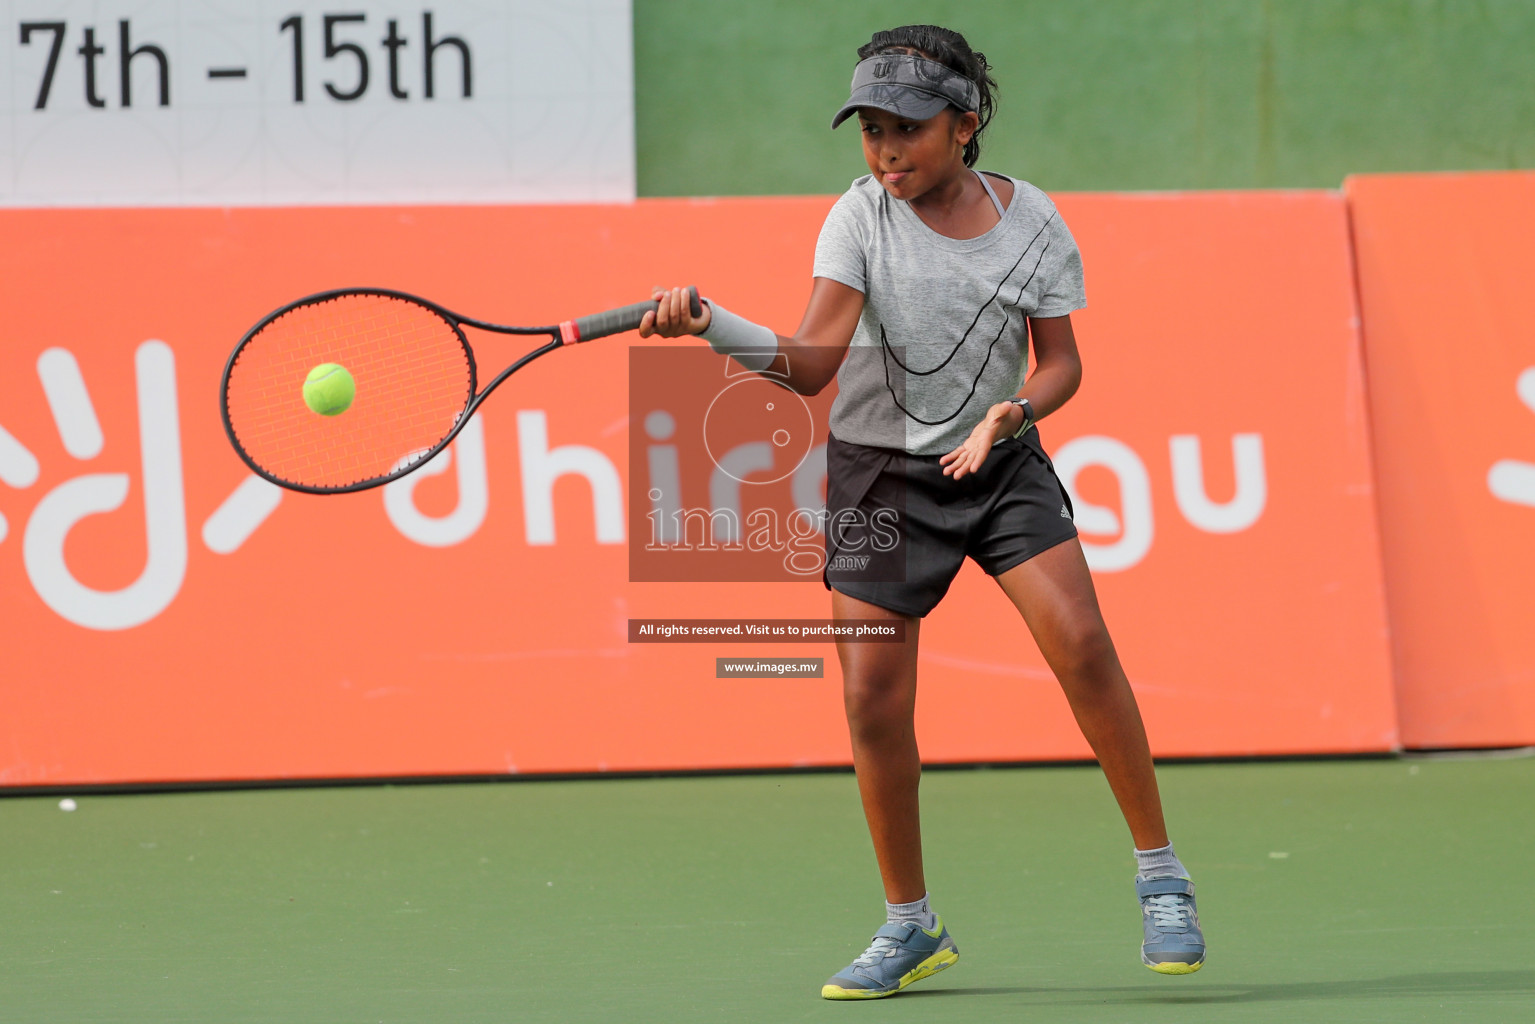 Maldives Tennis Open 2019, 13th Sep 2019, Male, Photos: Suadh Abdul Sattar/ Images.mv